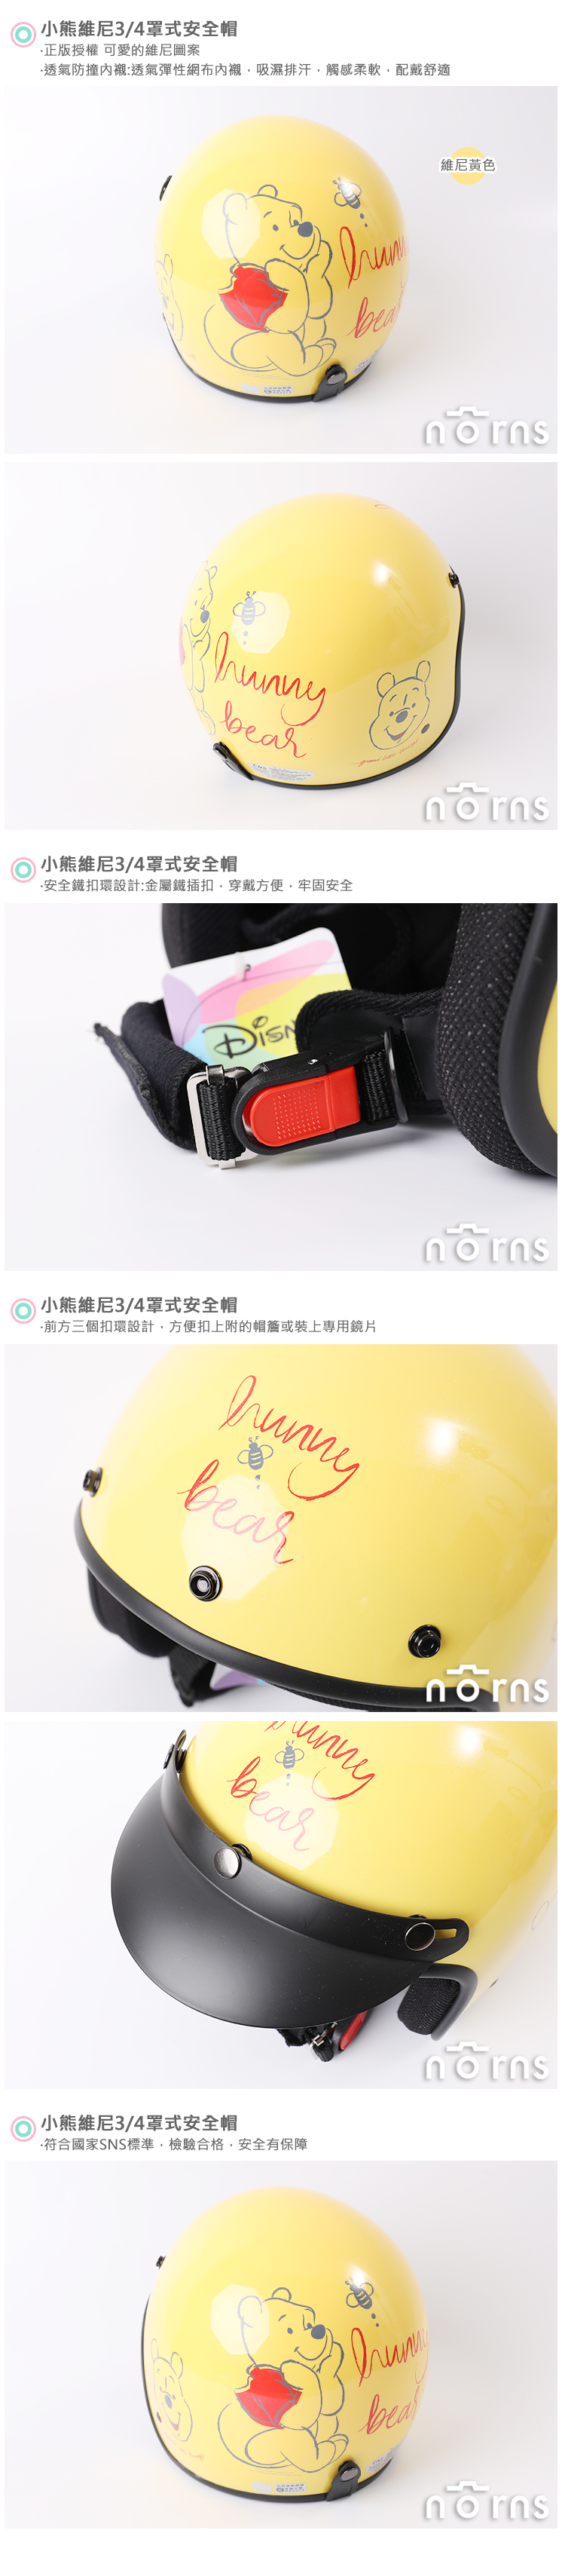 【小熊維尼3/4罩式安全帽】Norns台灣製 正版授權 機車 摩托車 復古